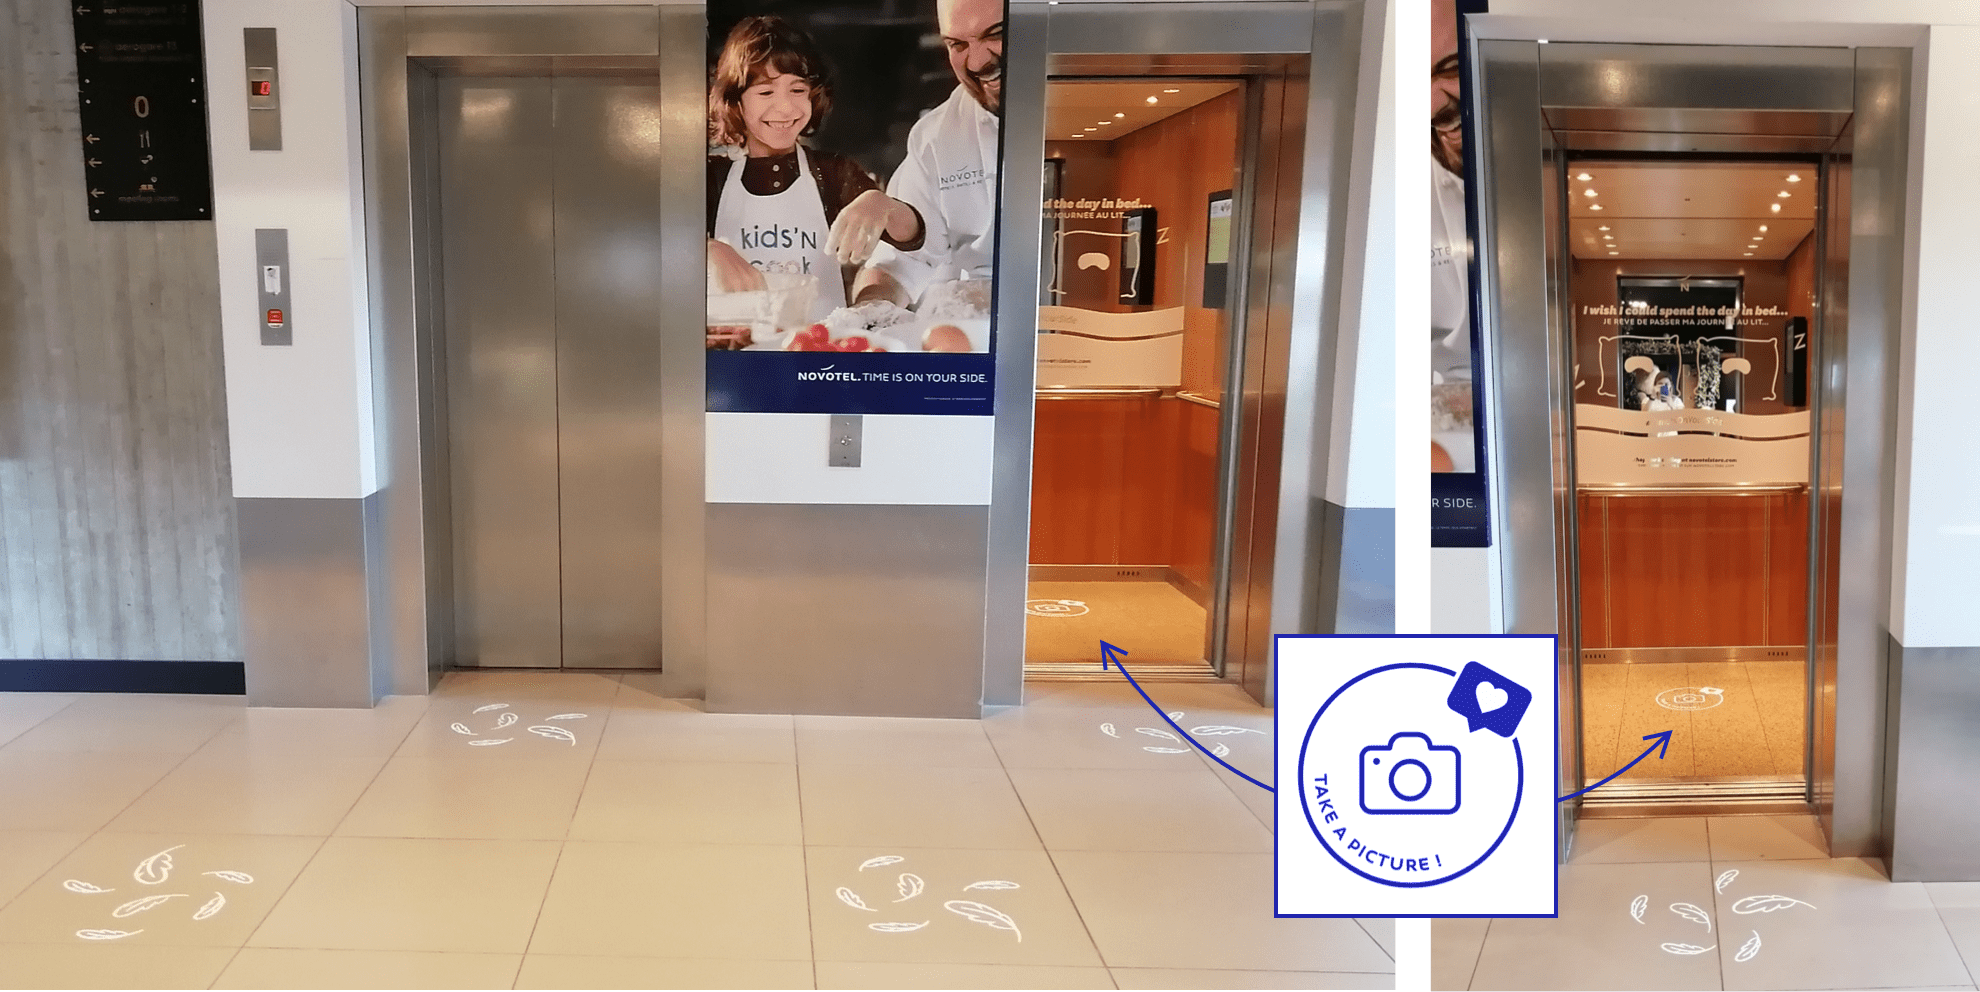 Novotel de l'aéroport de Charles-de-Gaulle : Parcours Client Signalétique et Marquage au sol et dans les ascenseurs par Candice Herbreteau